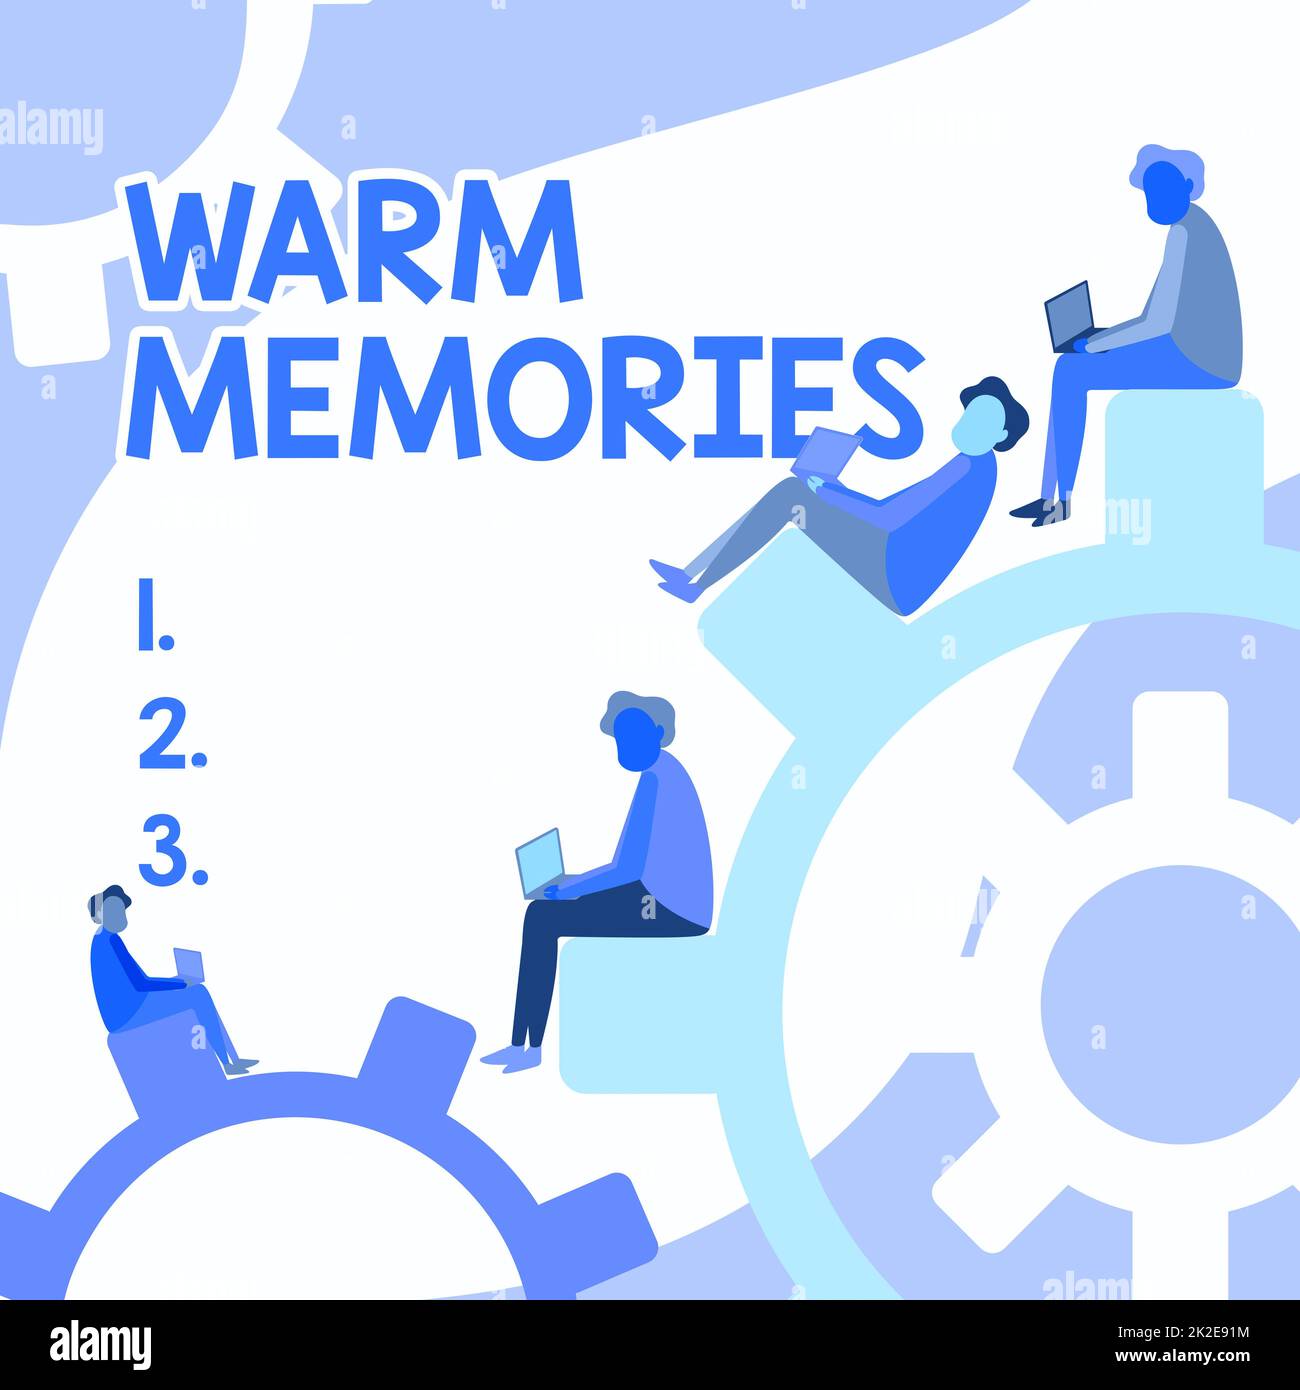 Textzeichen mit warmen Erinnerungen. Übersicht über das Unternehmen Warm Memories vier Teamkollegen zeichnen Sitzräder mit dem Laptop und zeigen den Fortschritt an. Stockfoto